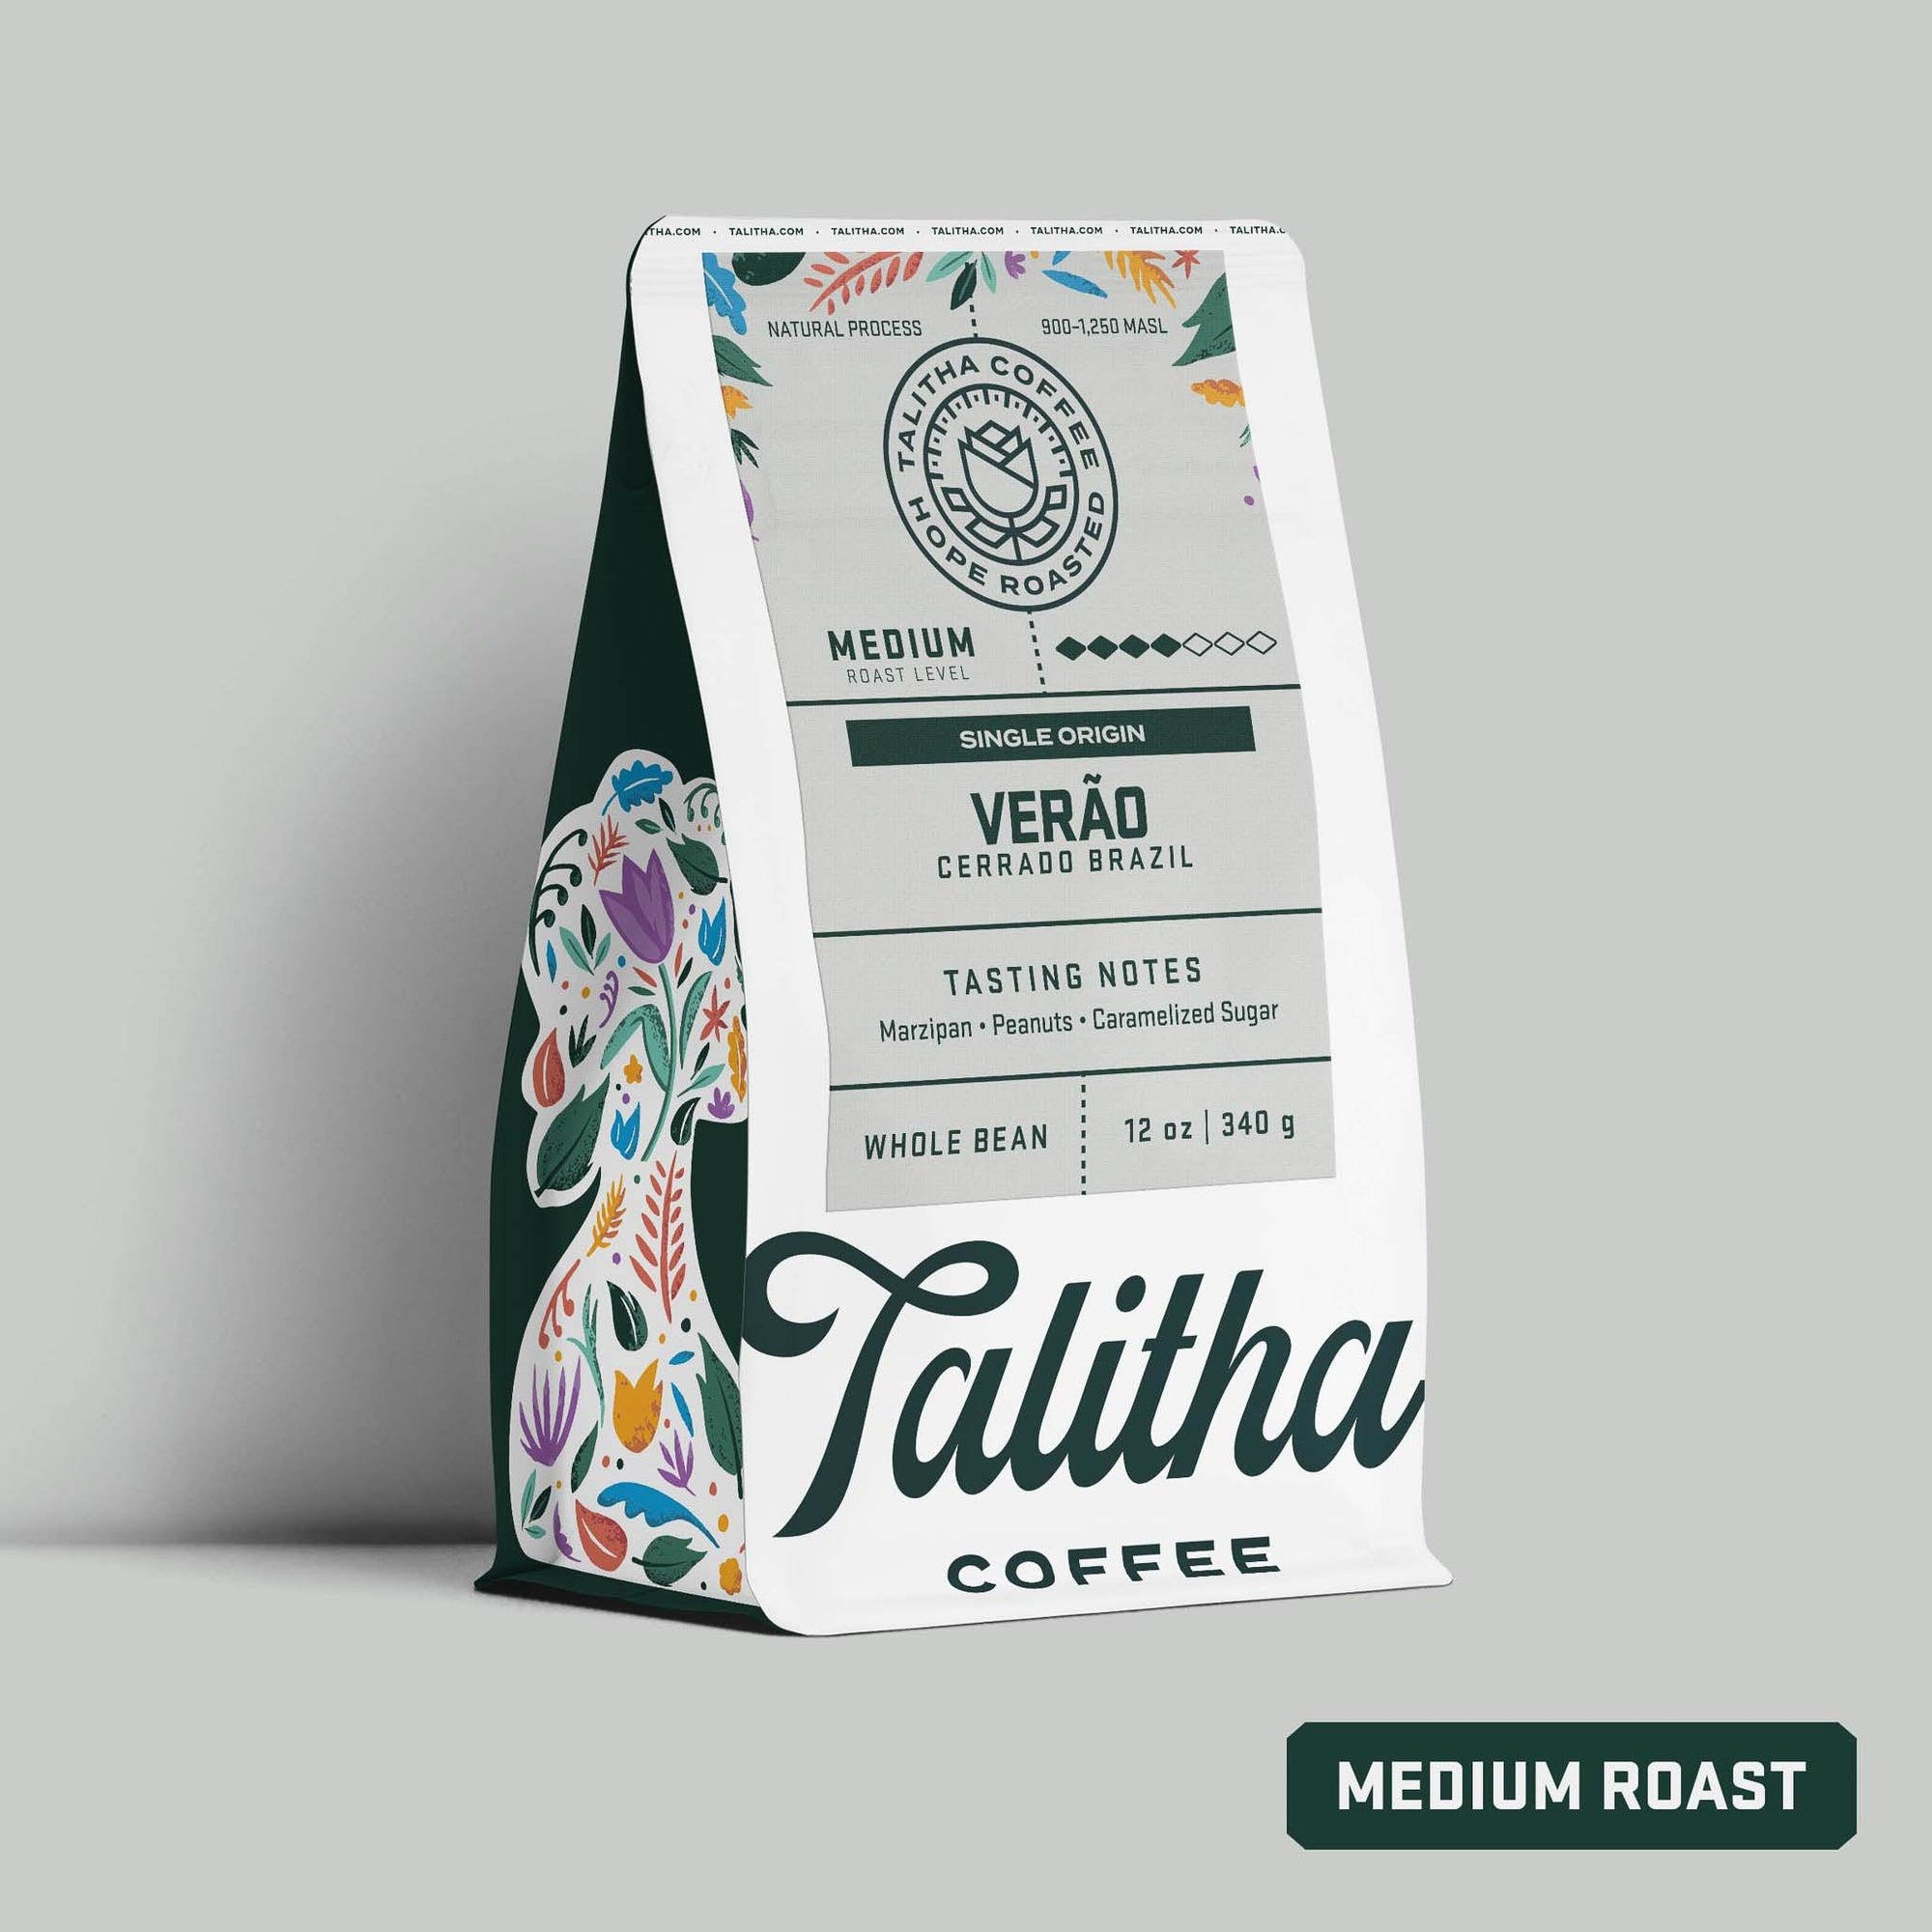 Verão - Brazil - Talitha Coffee